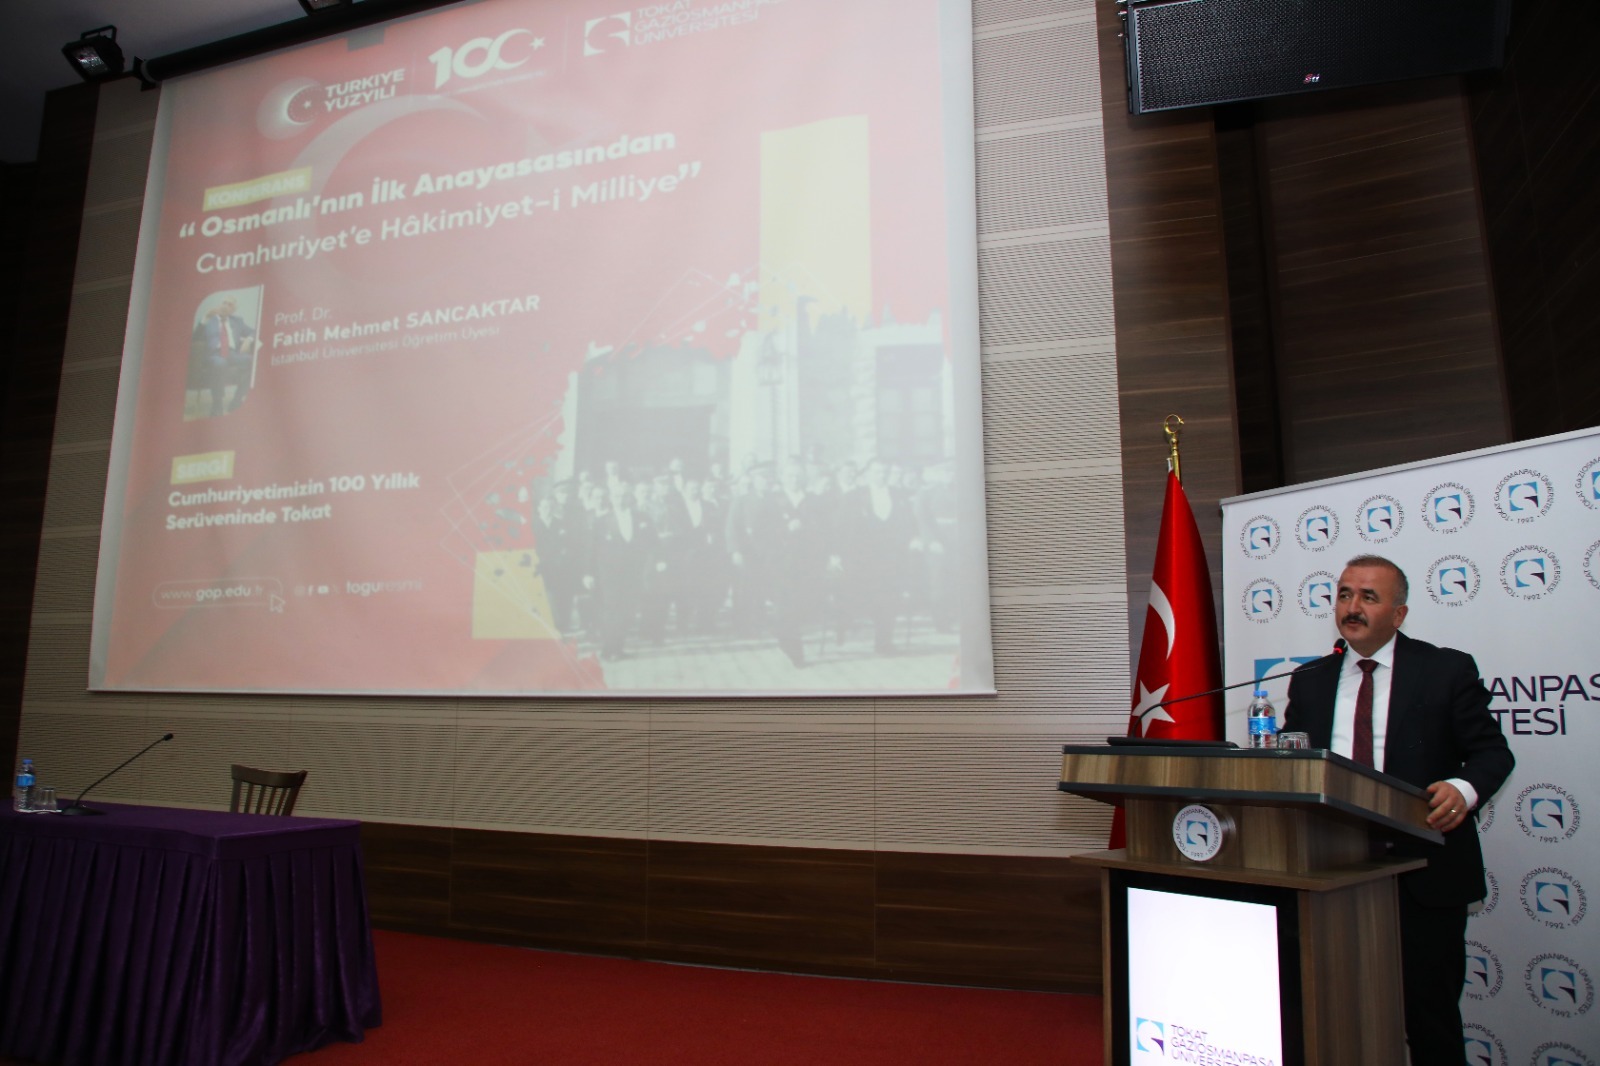 TOGÜ’de “Osmanlı’nın İlk Anayasasından Cumhuriyet’e Hakimiyet-i Milliye” konferansı